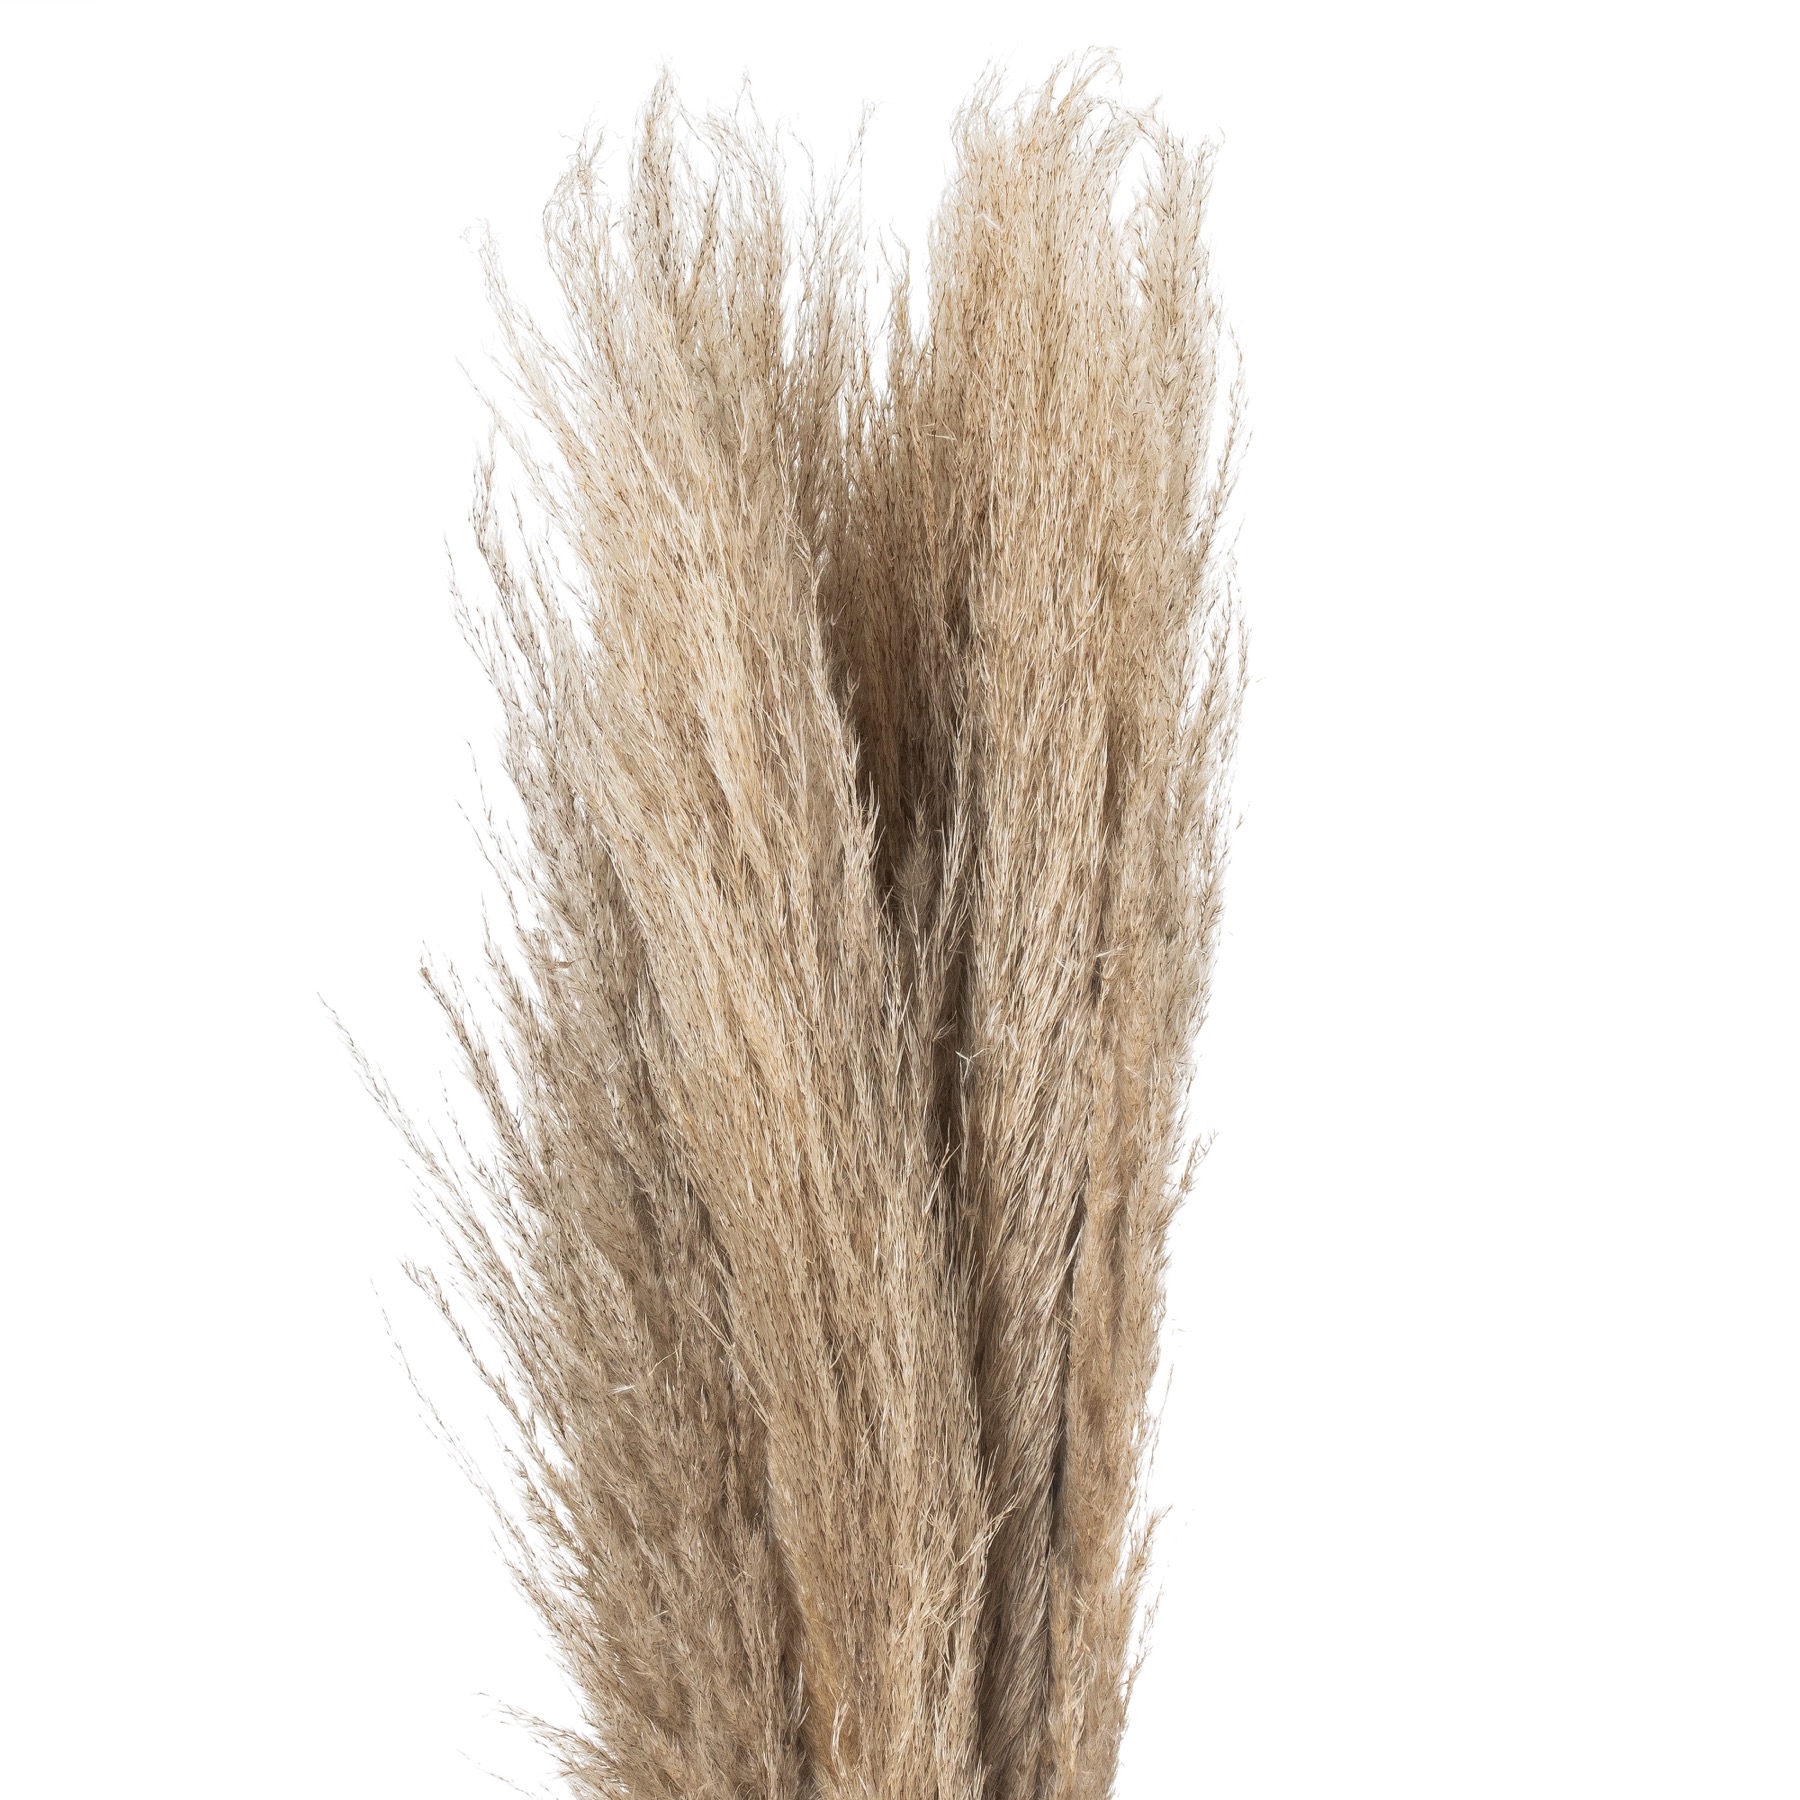 Taupe Grey Pampas Grass Stem - Image 4